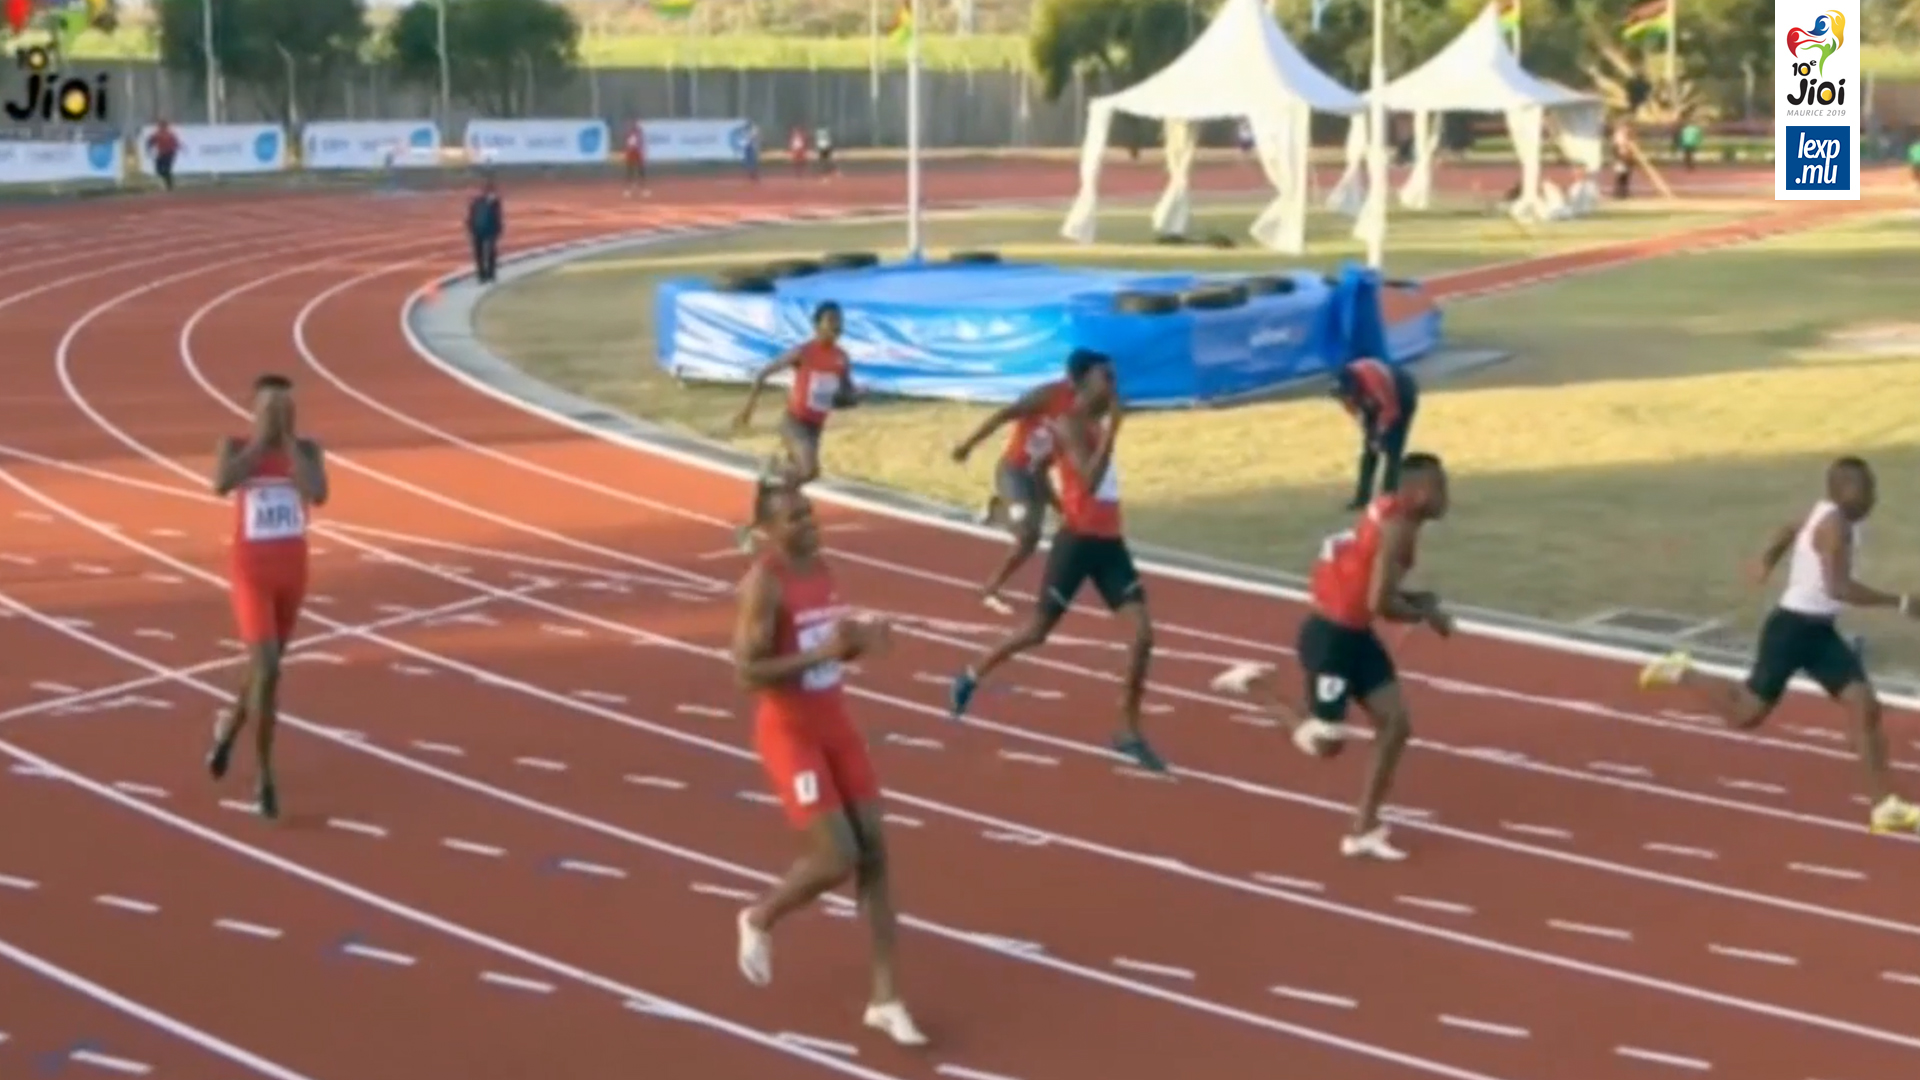 JIOI 2019 - Relais 4 X 100 m homme: Maurice disqualifié, Madagascar s’impose